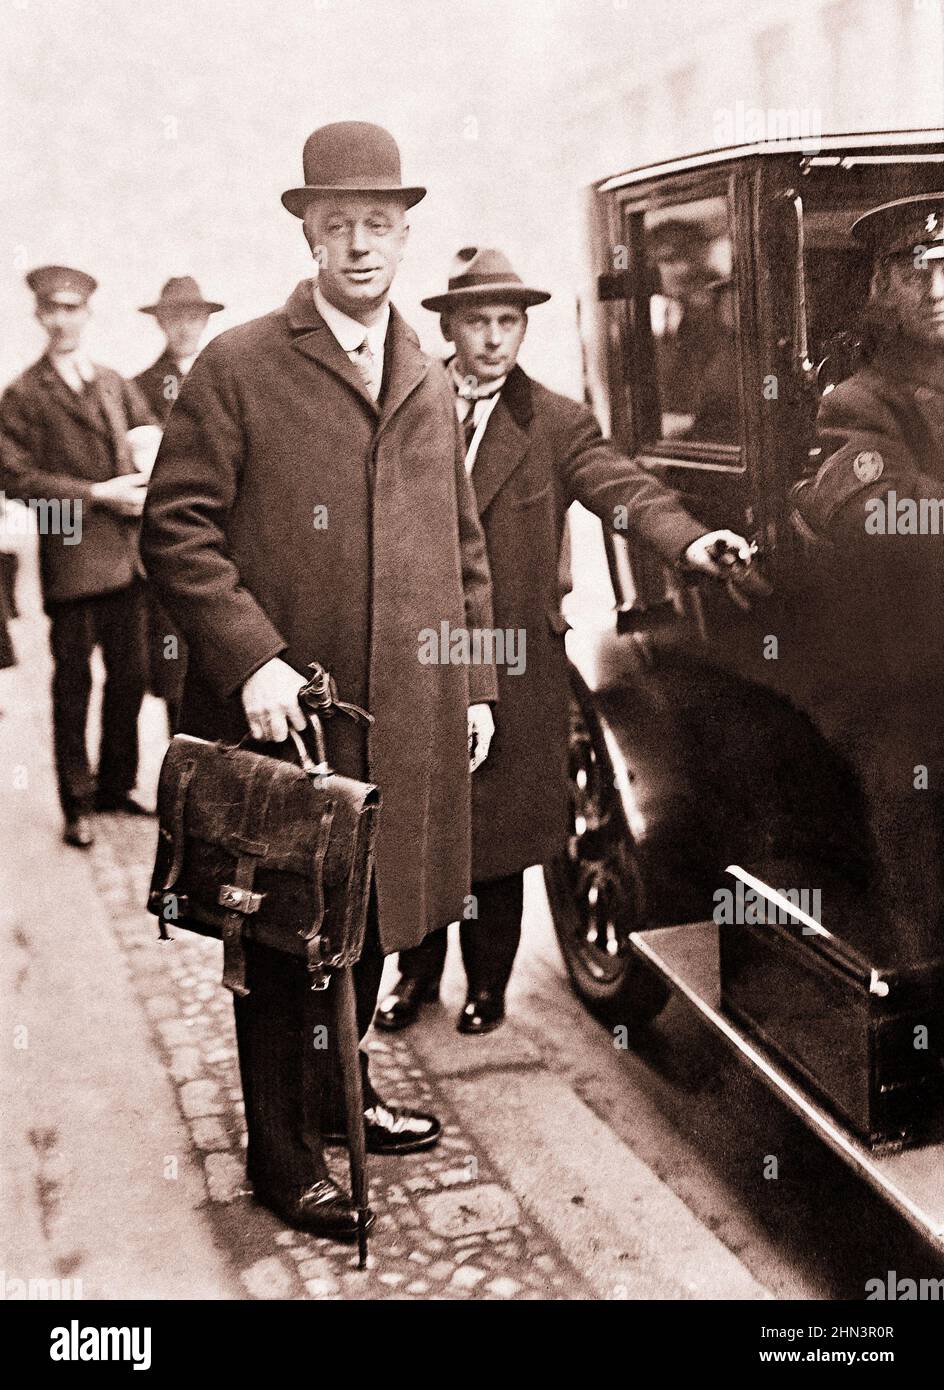 Vintage-Foto von Sir Eric Drummond. Sir Eric Drummond (1876-1951) war der erste Generalsekretär des Völkerbundes. Ausbildung am Eton College, Stockfoto